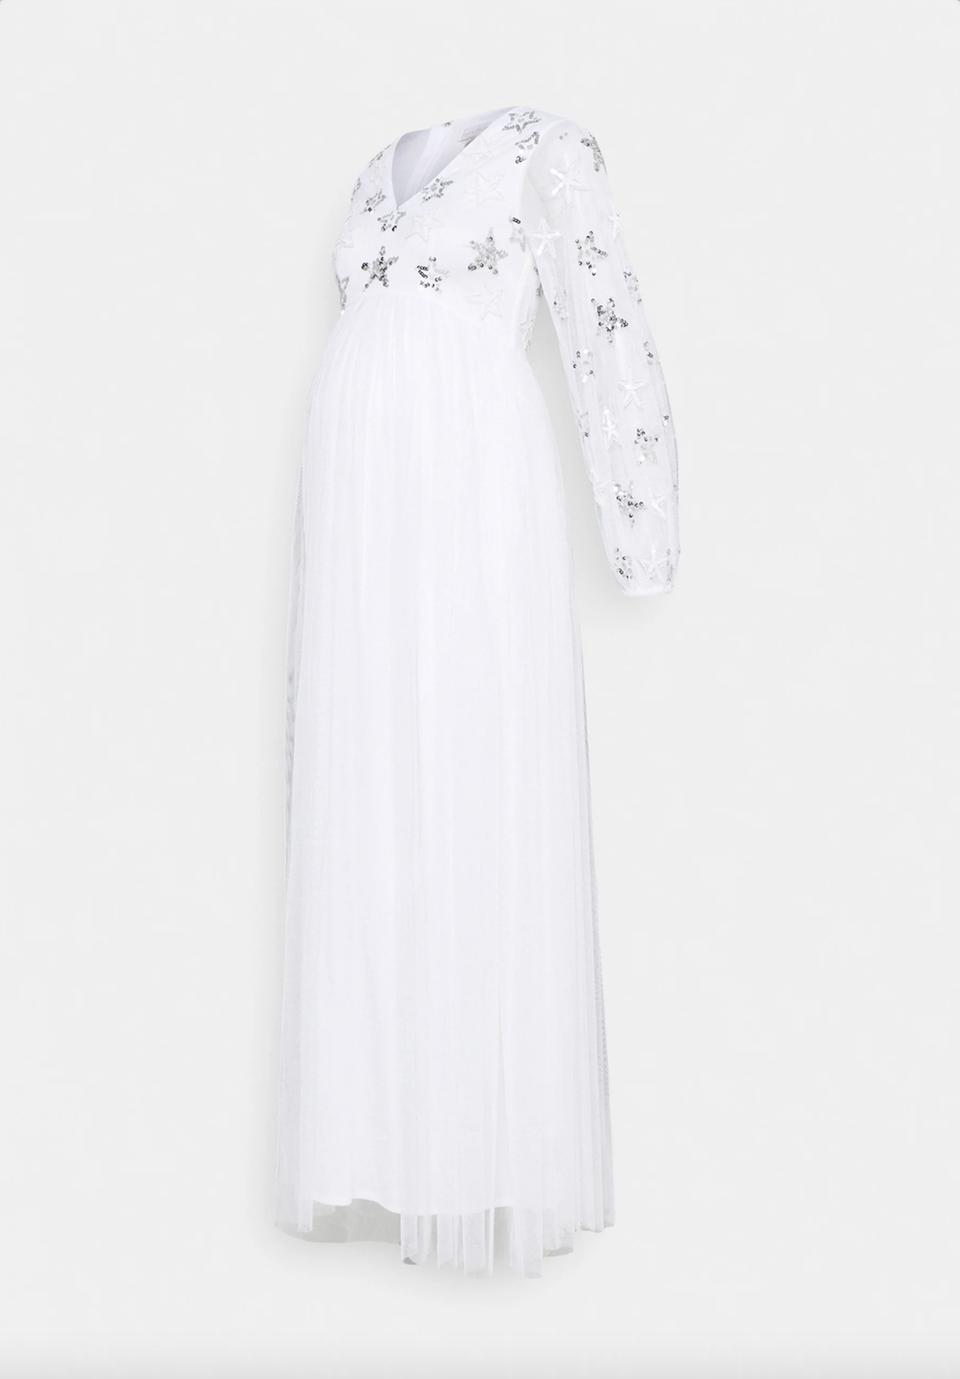 Wer es etwas ausgefallener mag, findet bei diesem Kleid mit glamourösen Sternchen-Details definitiv sein Glück. Von Maya Deluxe, ca. 130 Euro.